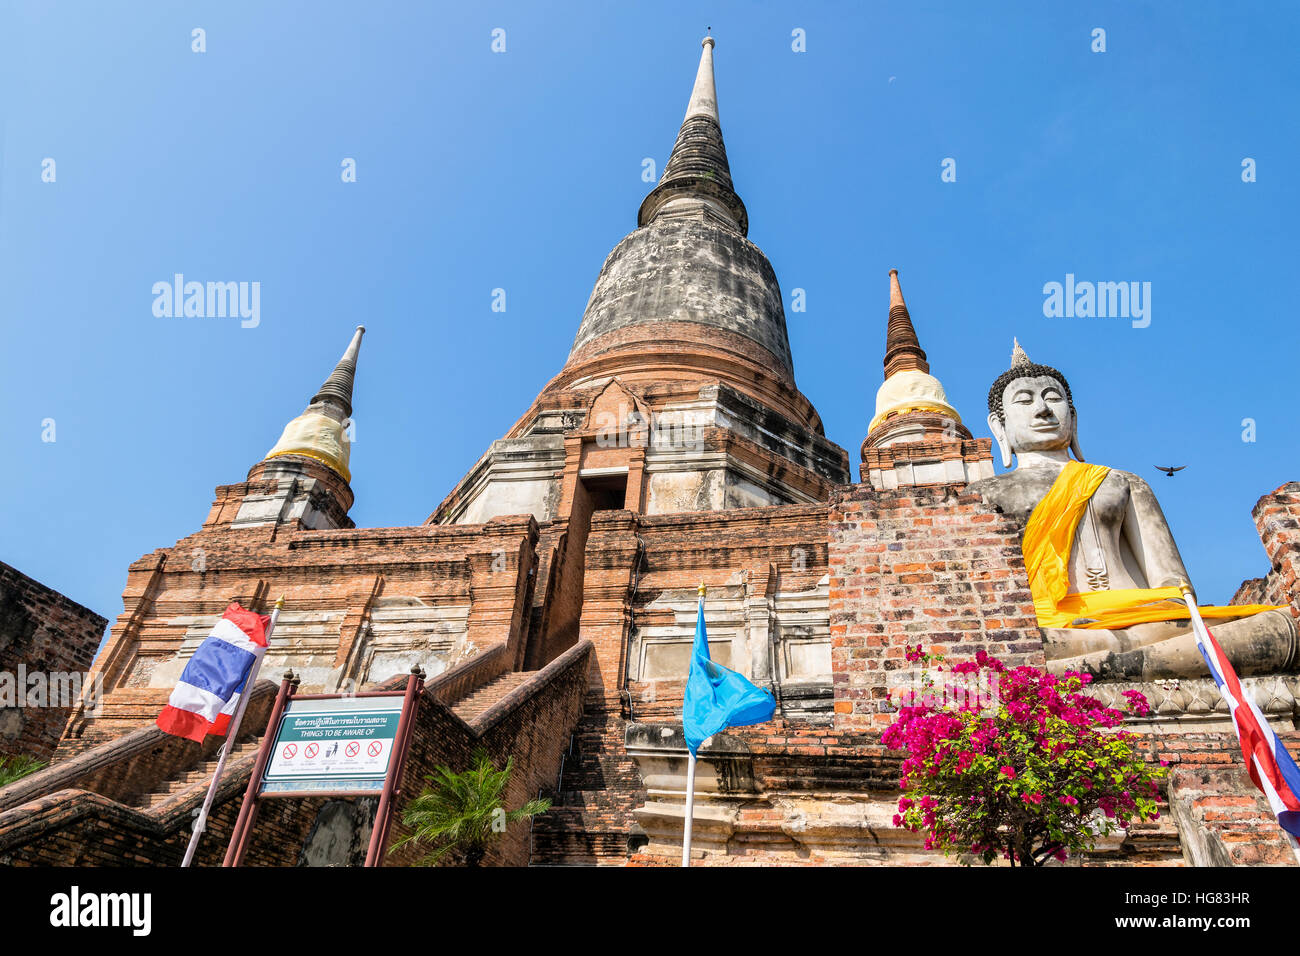 Estatua de Buda en la parte inferior de un antiguo gran pagoda sobre fondo de cielo azul en Wat Yai Chai Mongkon Templo de Phra Nakhon Si Ayutthaya histórico Foto de stock